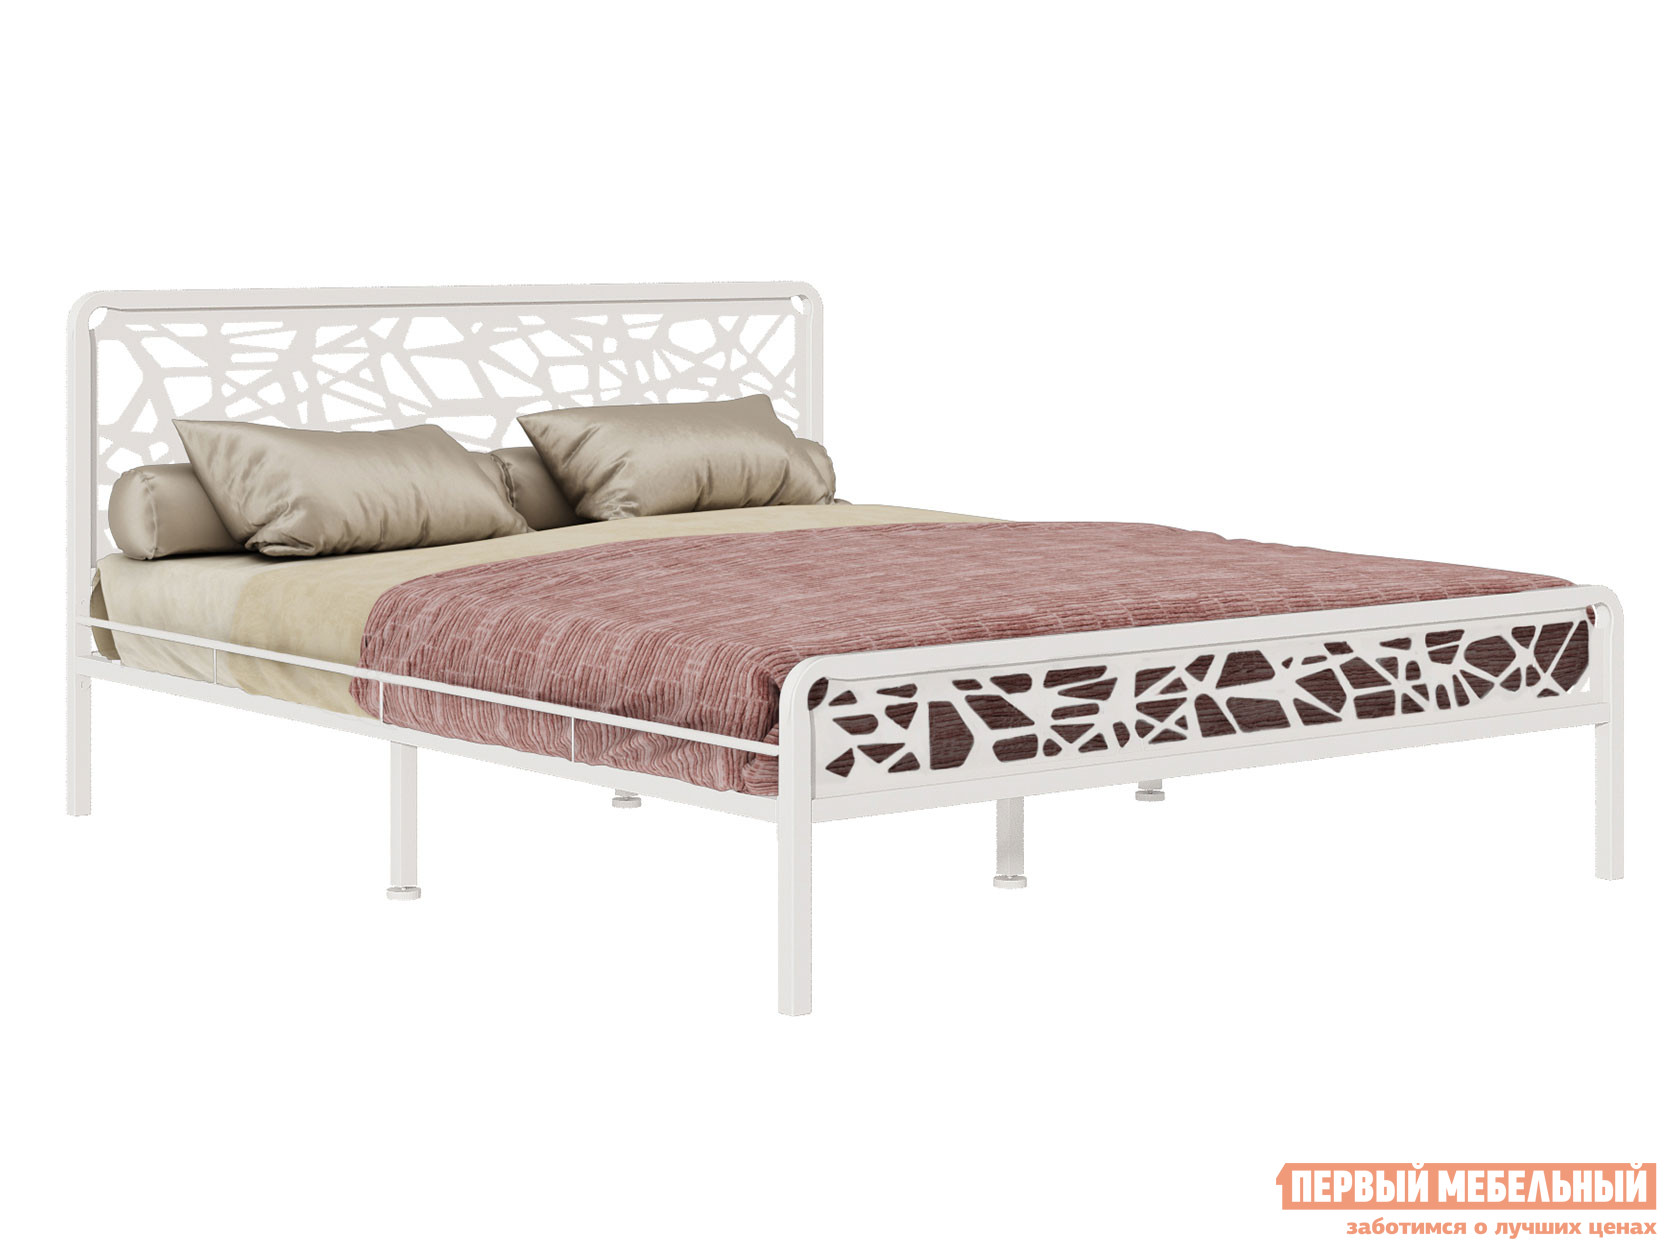 Односпальная кровать  Орион Белый, металл, 120х200 см